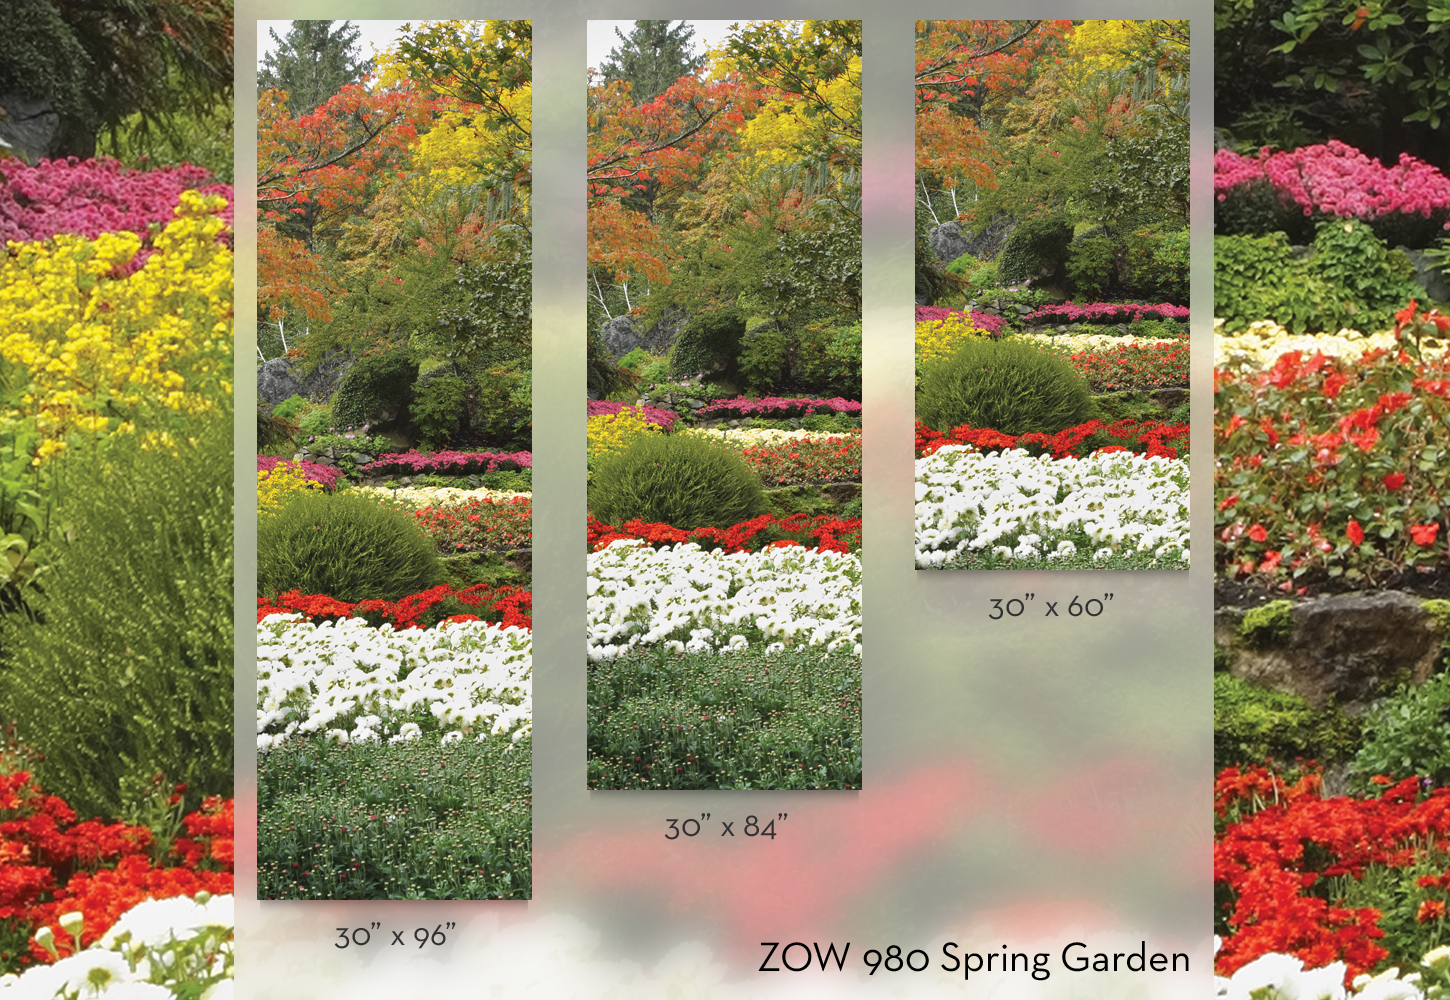 ZOW 980 Spring Garden